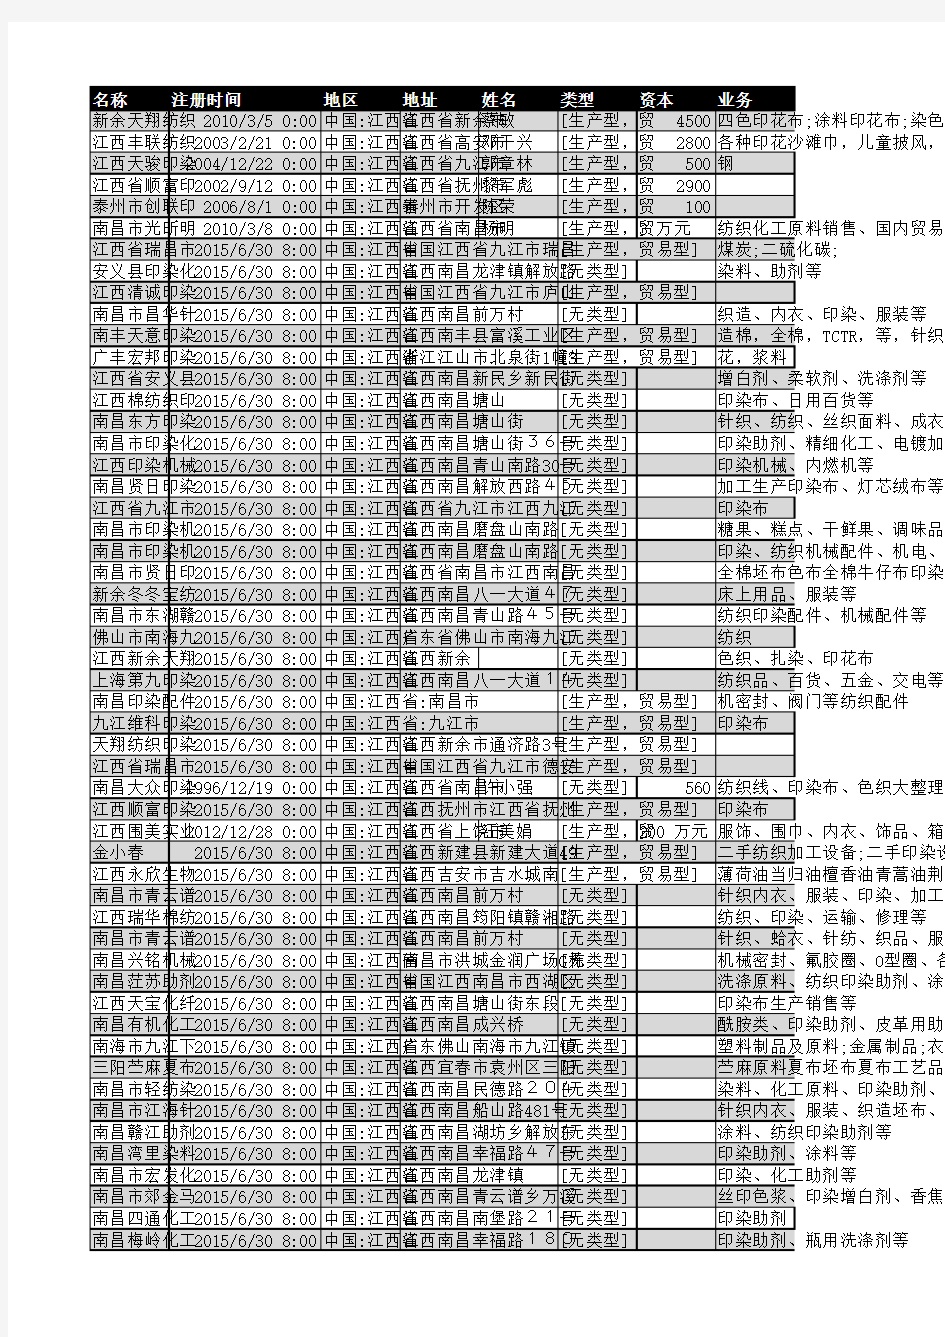 2018年江西省印染行业企业名录73家